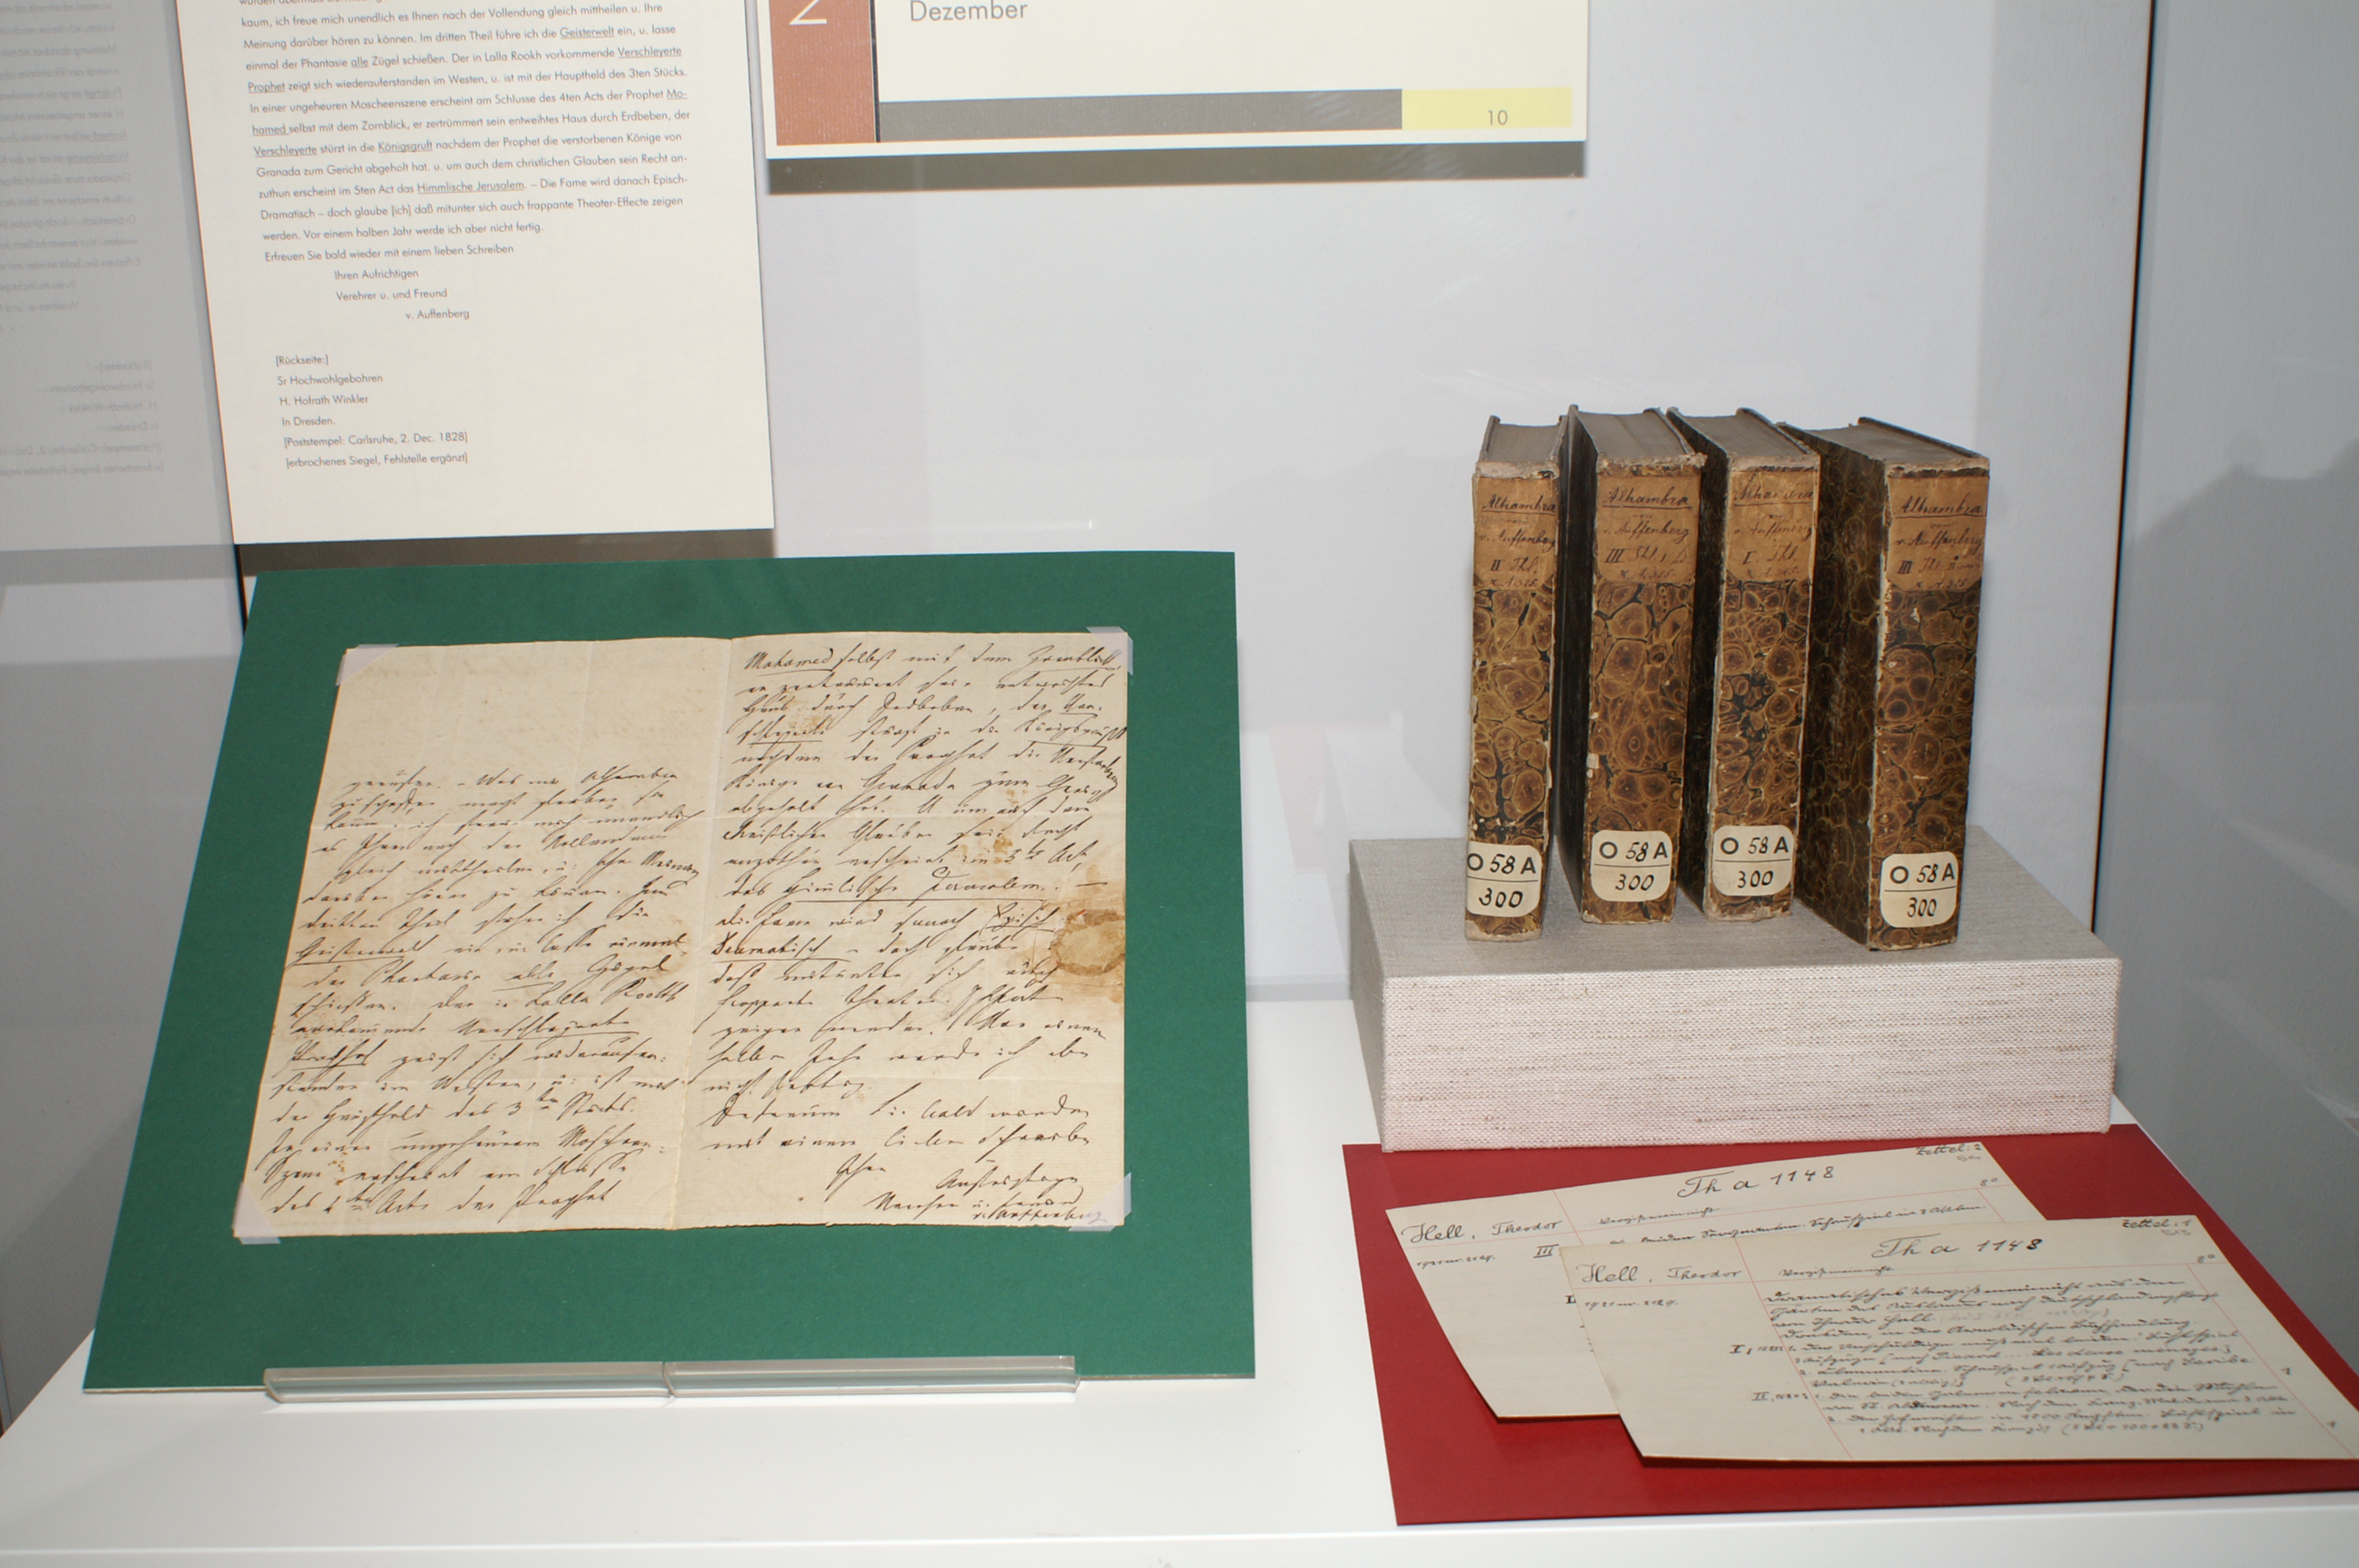 Der Brief von Joseph von Auffenberg ist aufgezogen auf grüner Pappe, rechts hinten sind vier Bände des Almanach.